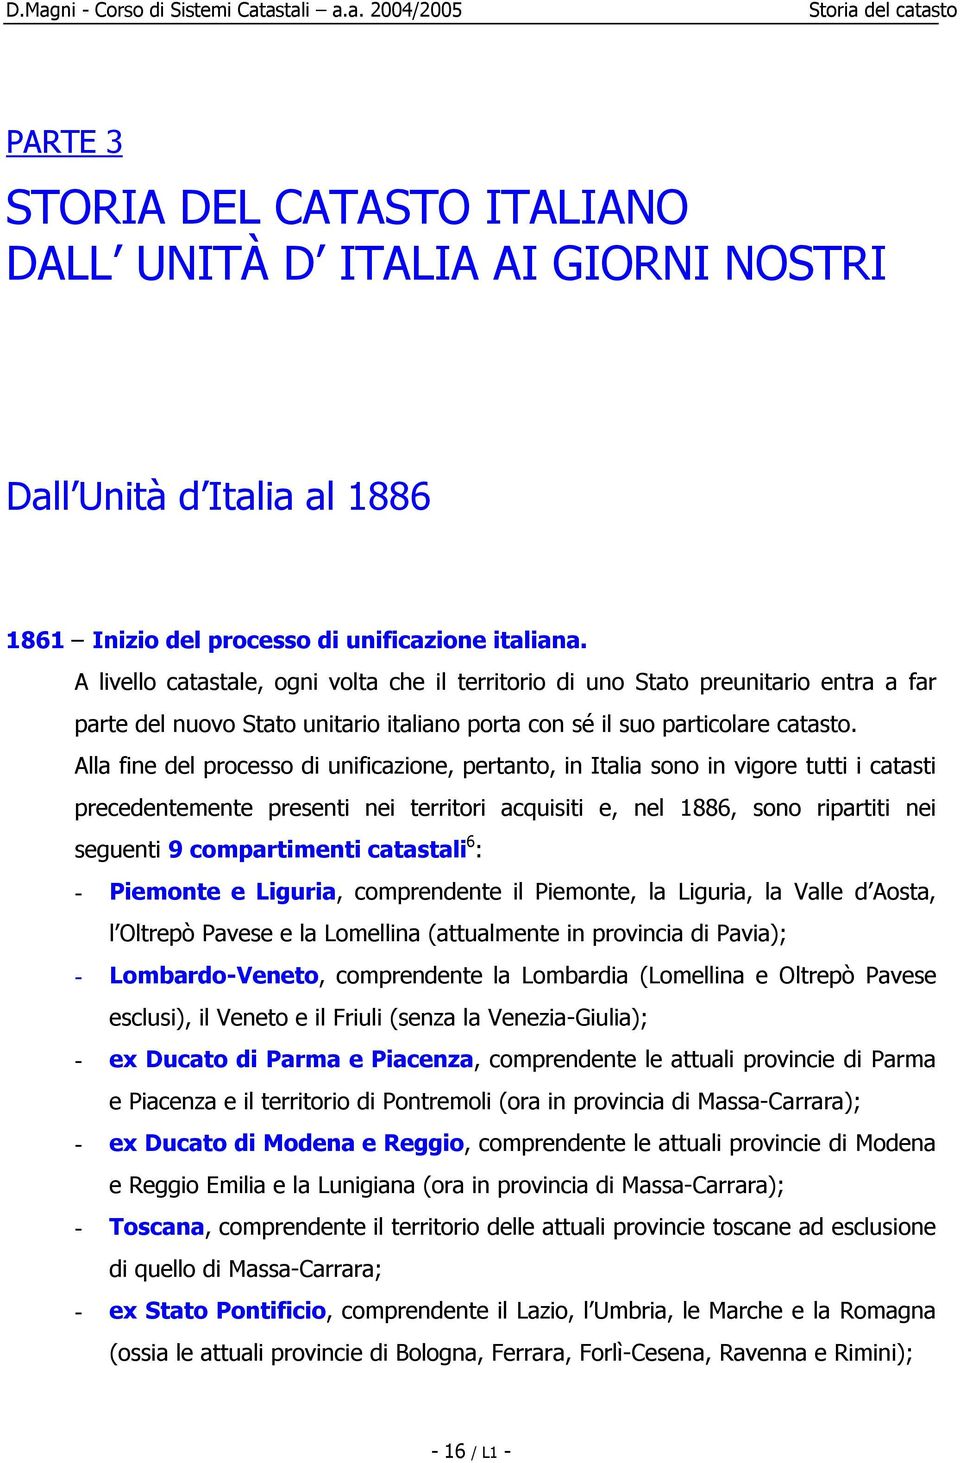 Alla fine del processo di unificazione, pertanto, in Italia sono in vigore tutti i catasti precedentemente presenti nei territori acquisiti e, nel 1886, sono ripartiti nei seguenti 9 compartimenti